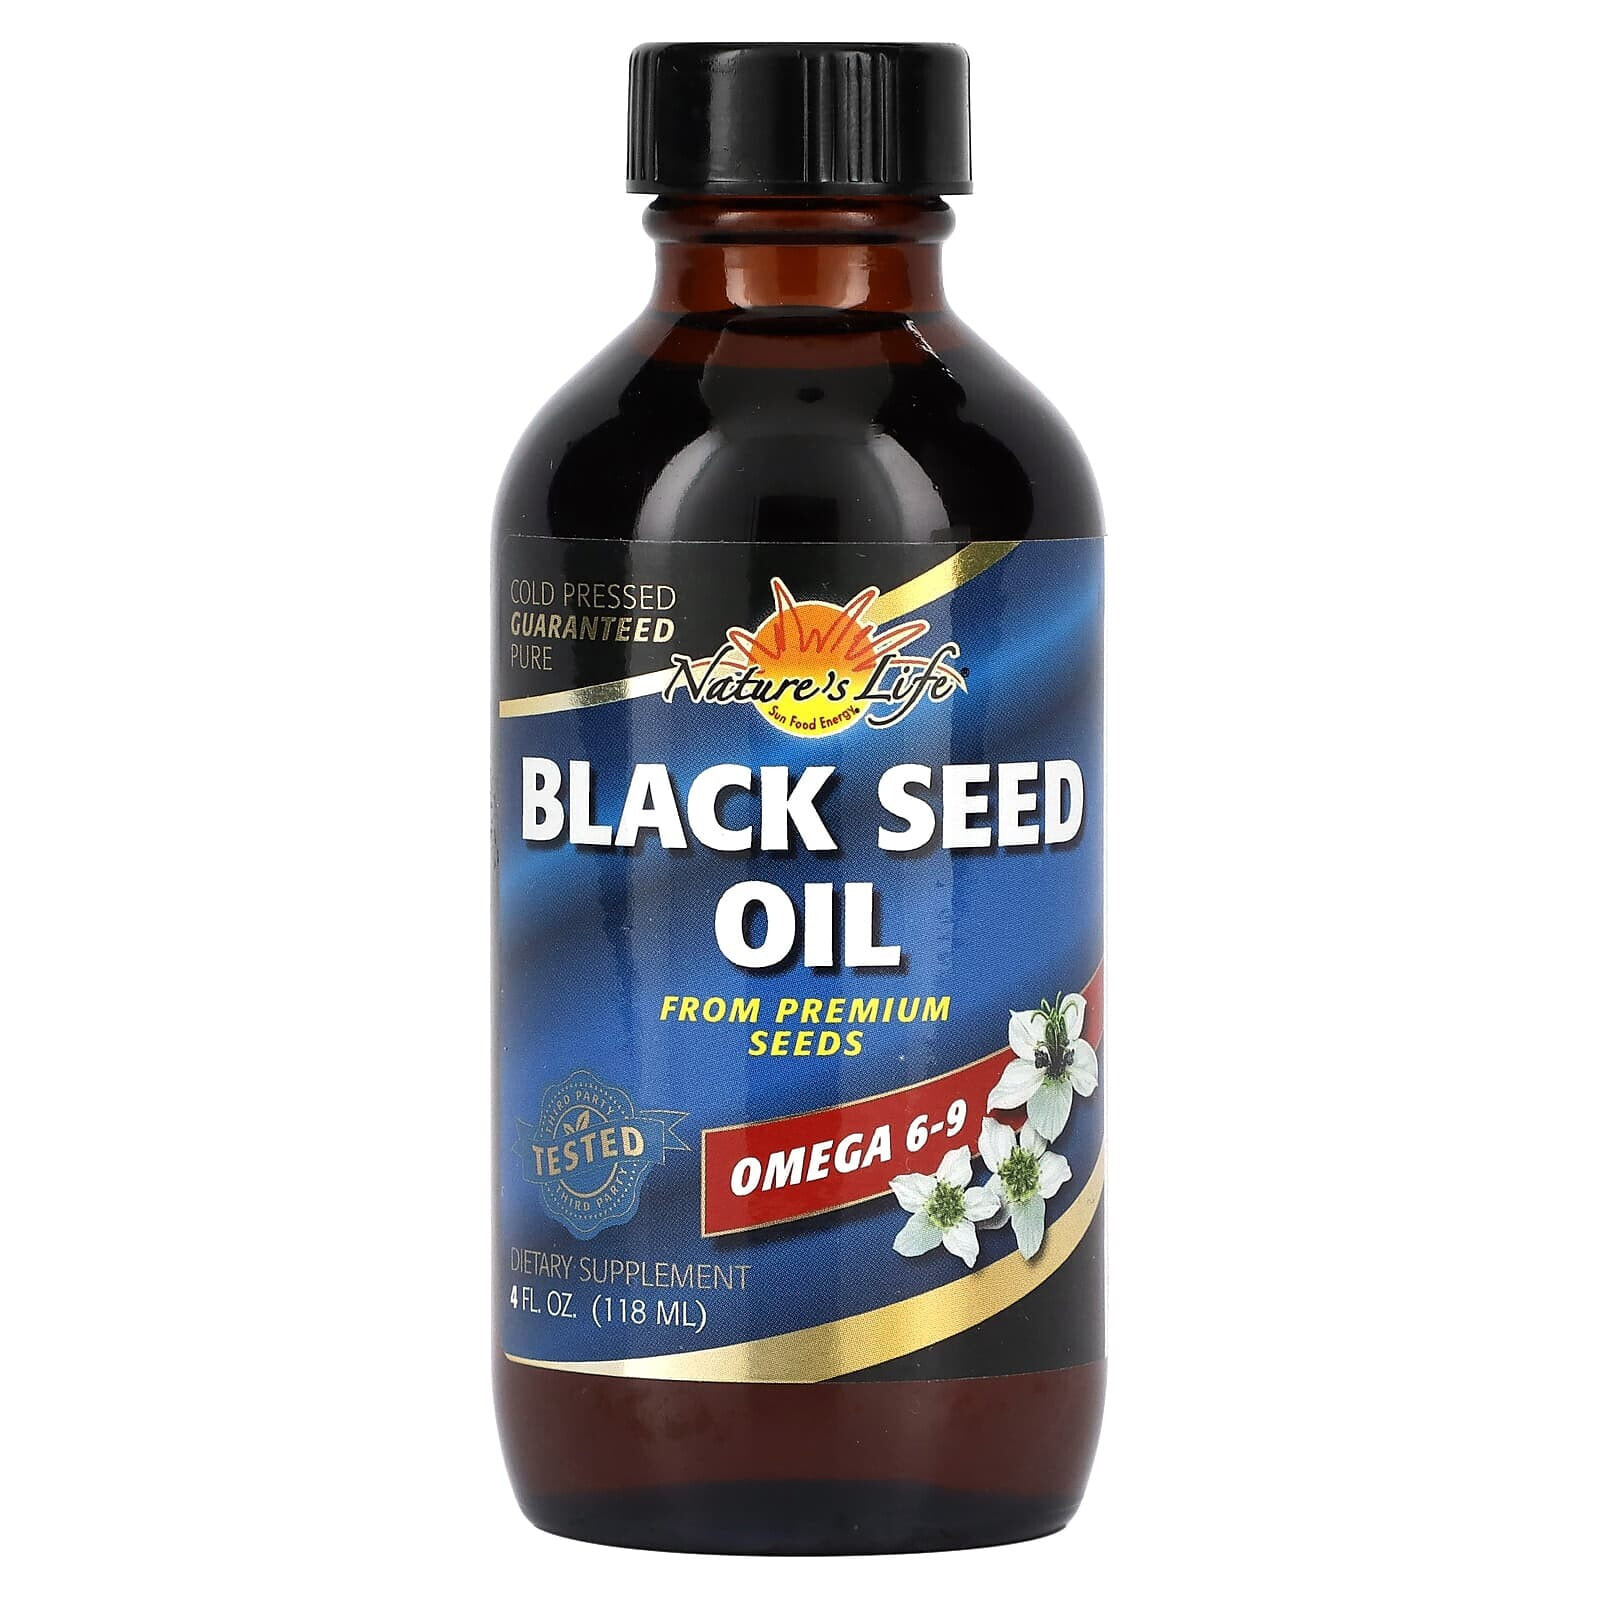 Хэлс фром де сан, Black Seed Oil, 4 fl oz (118 ml) (Товар снят с продажи) 